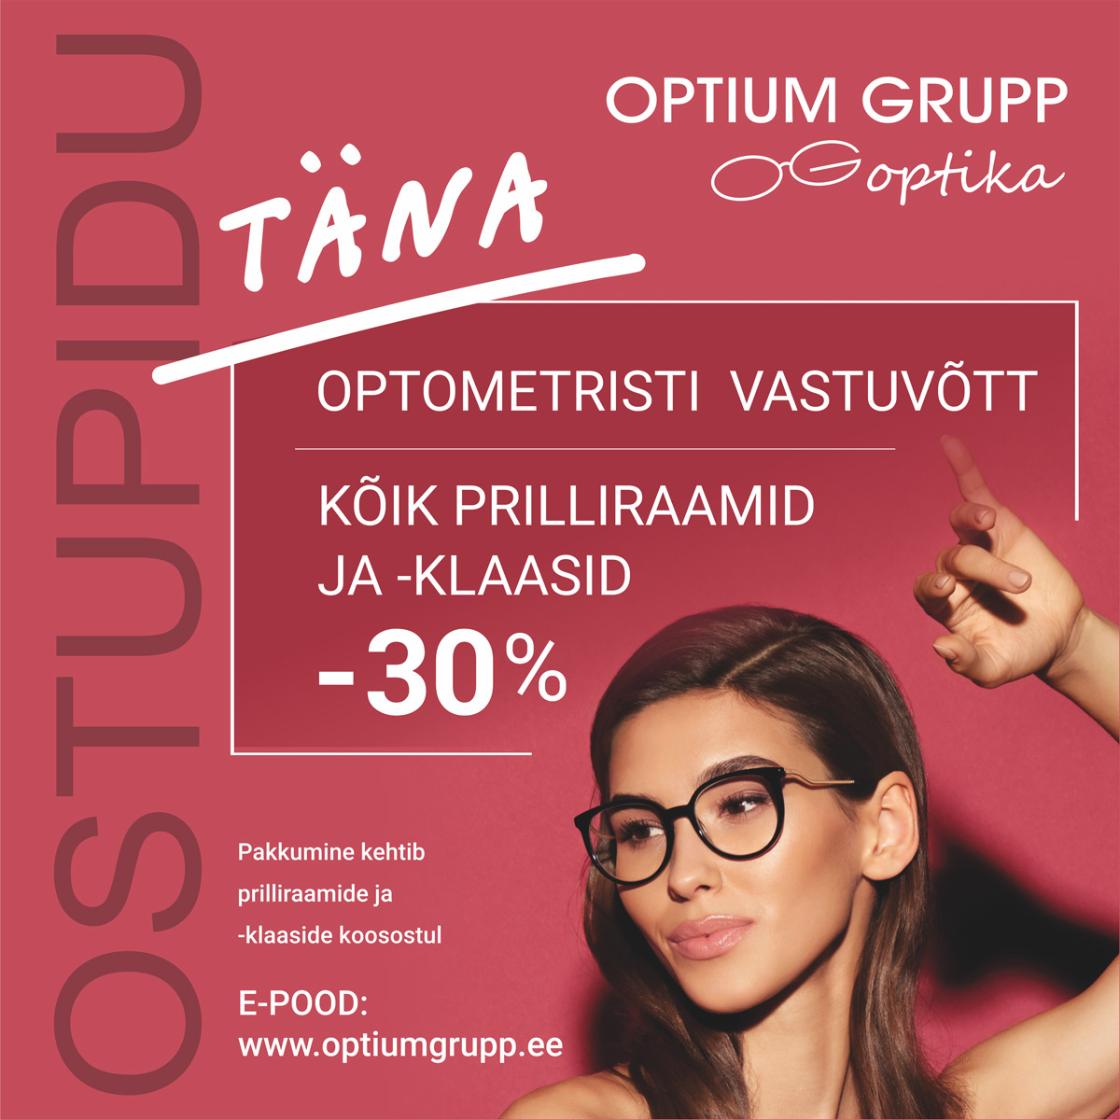 Ostupidu Optium Grupp Optikas! - Optium Grupp Optika